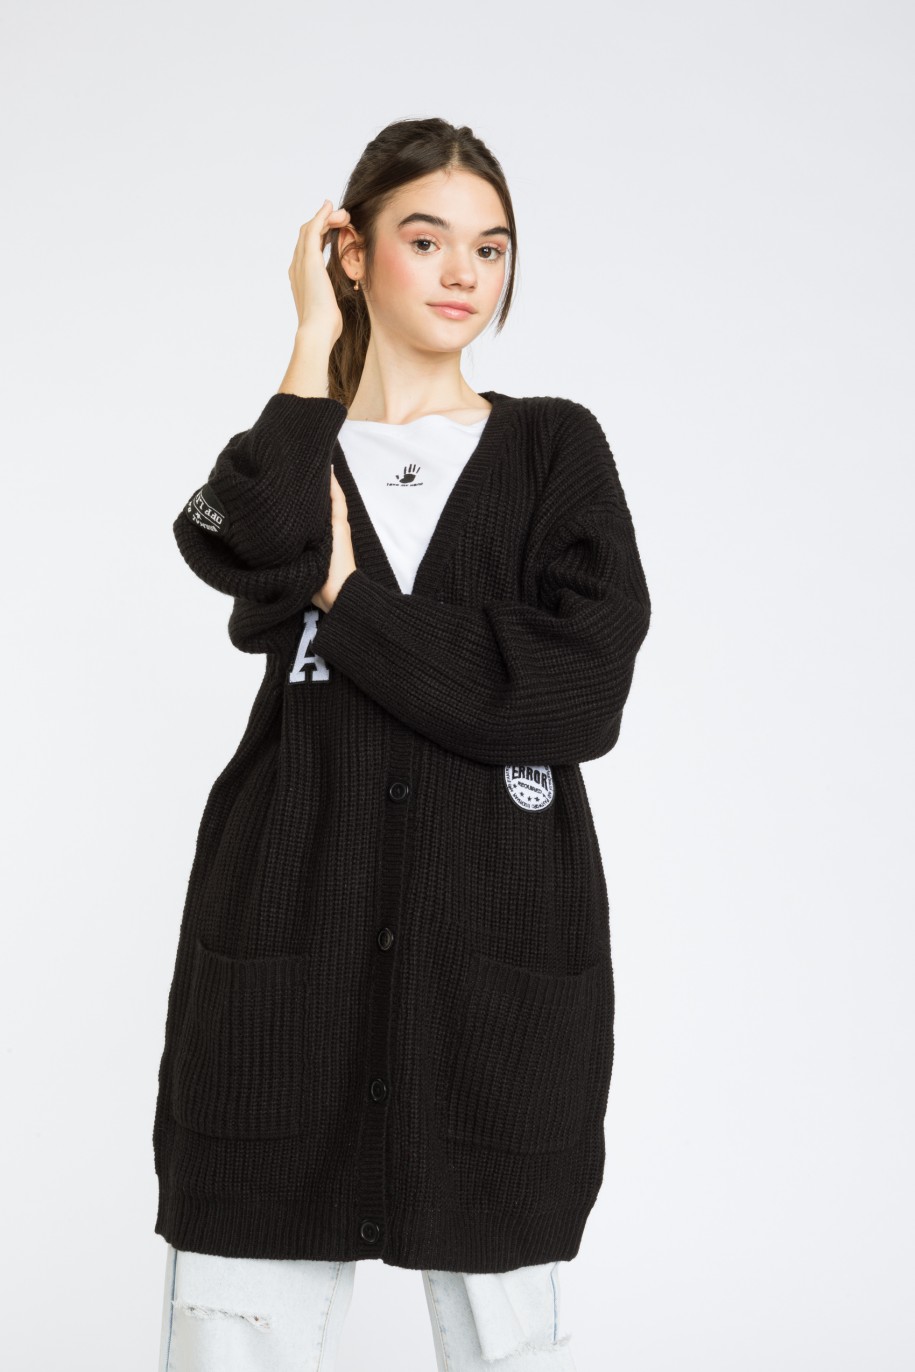 Czarny przedłużany sweter kardigan SCHOOL GIRL reporter young